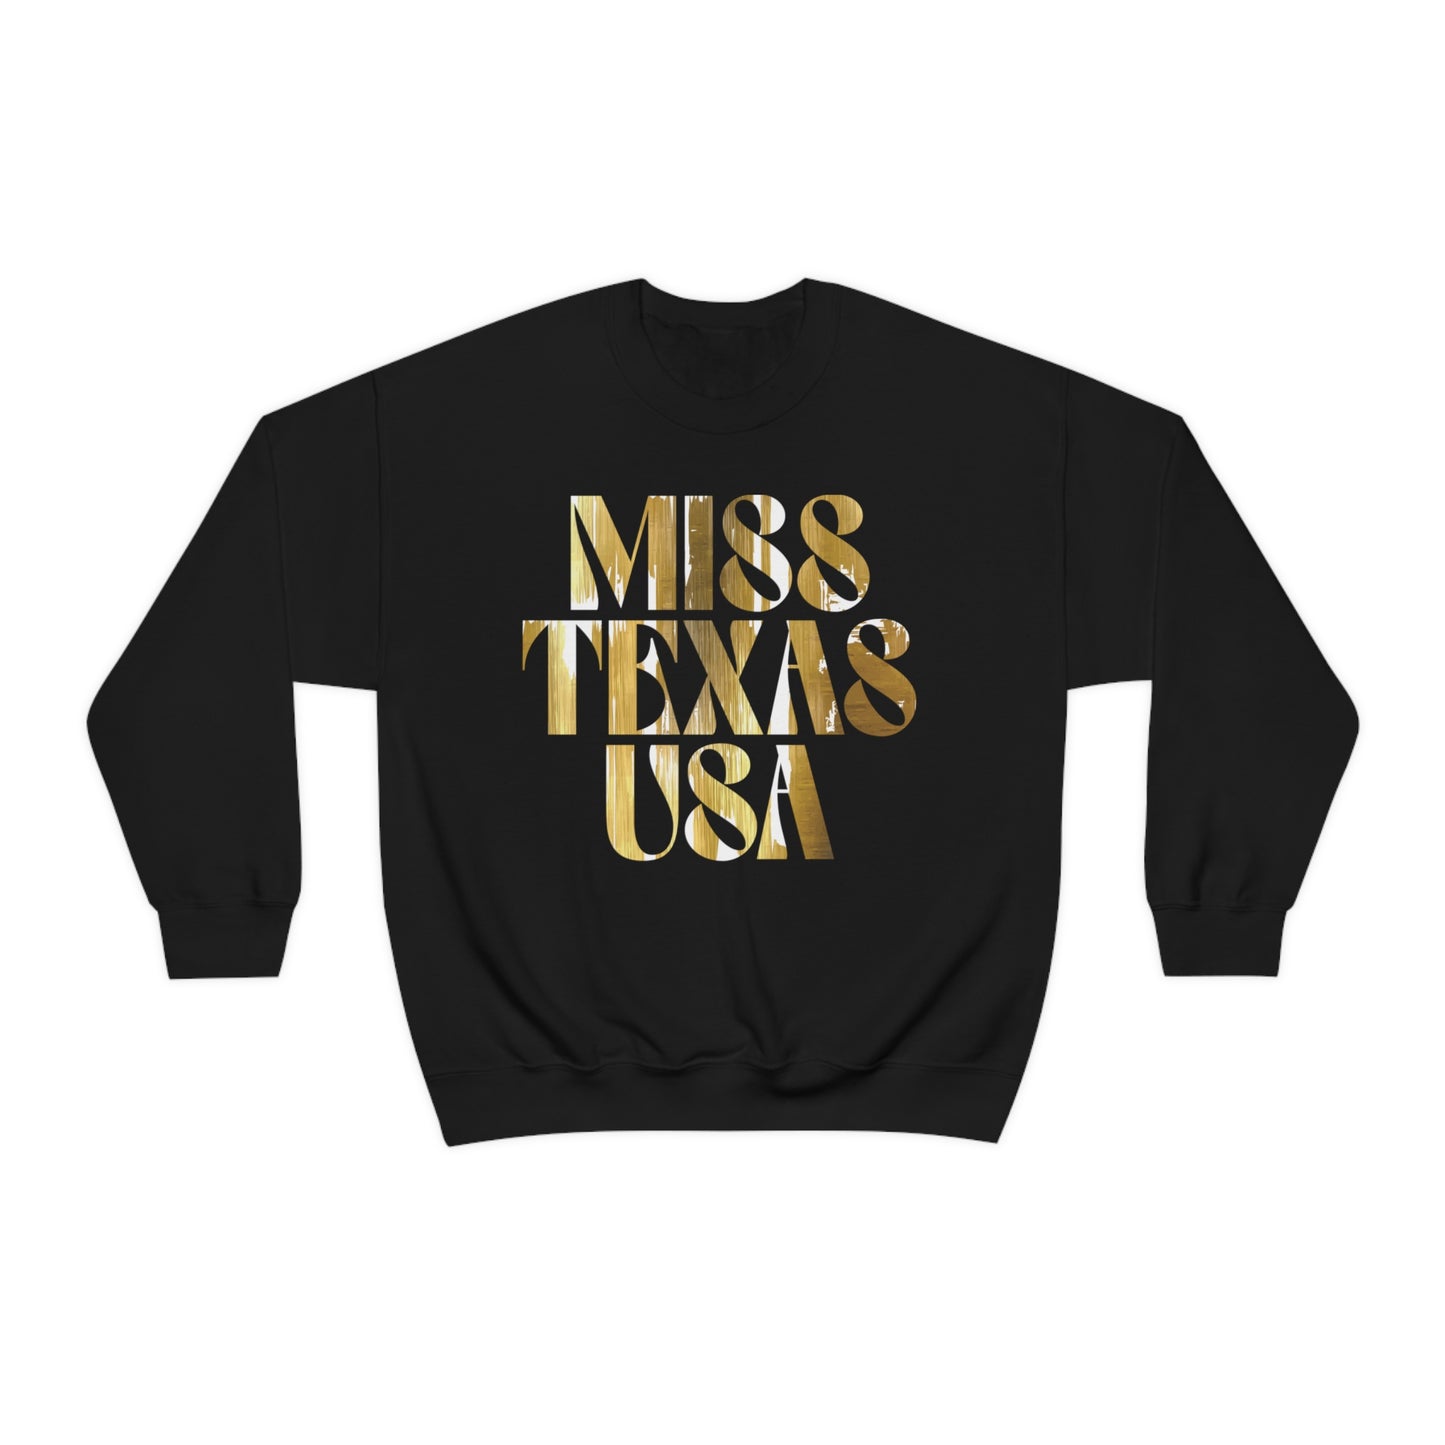 "Texas Gold Dos" Sweatshirt - Miss Texas USA